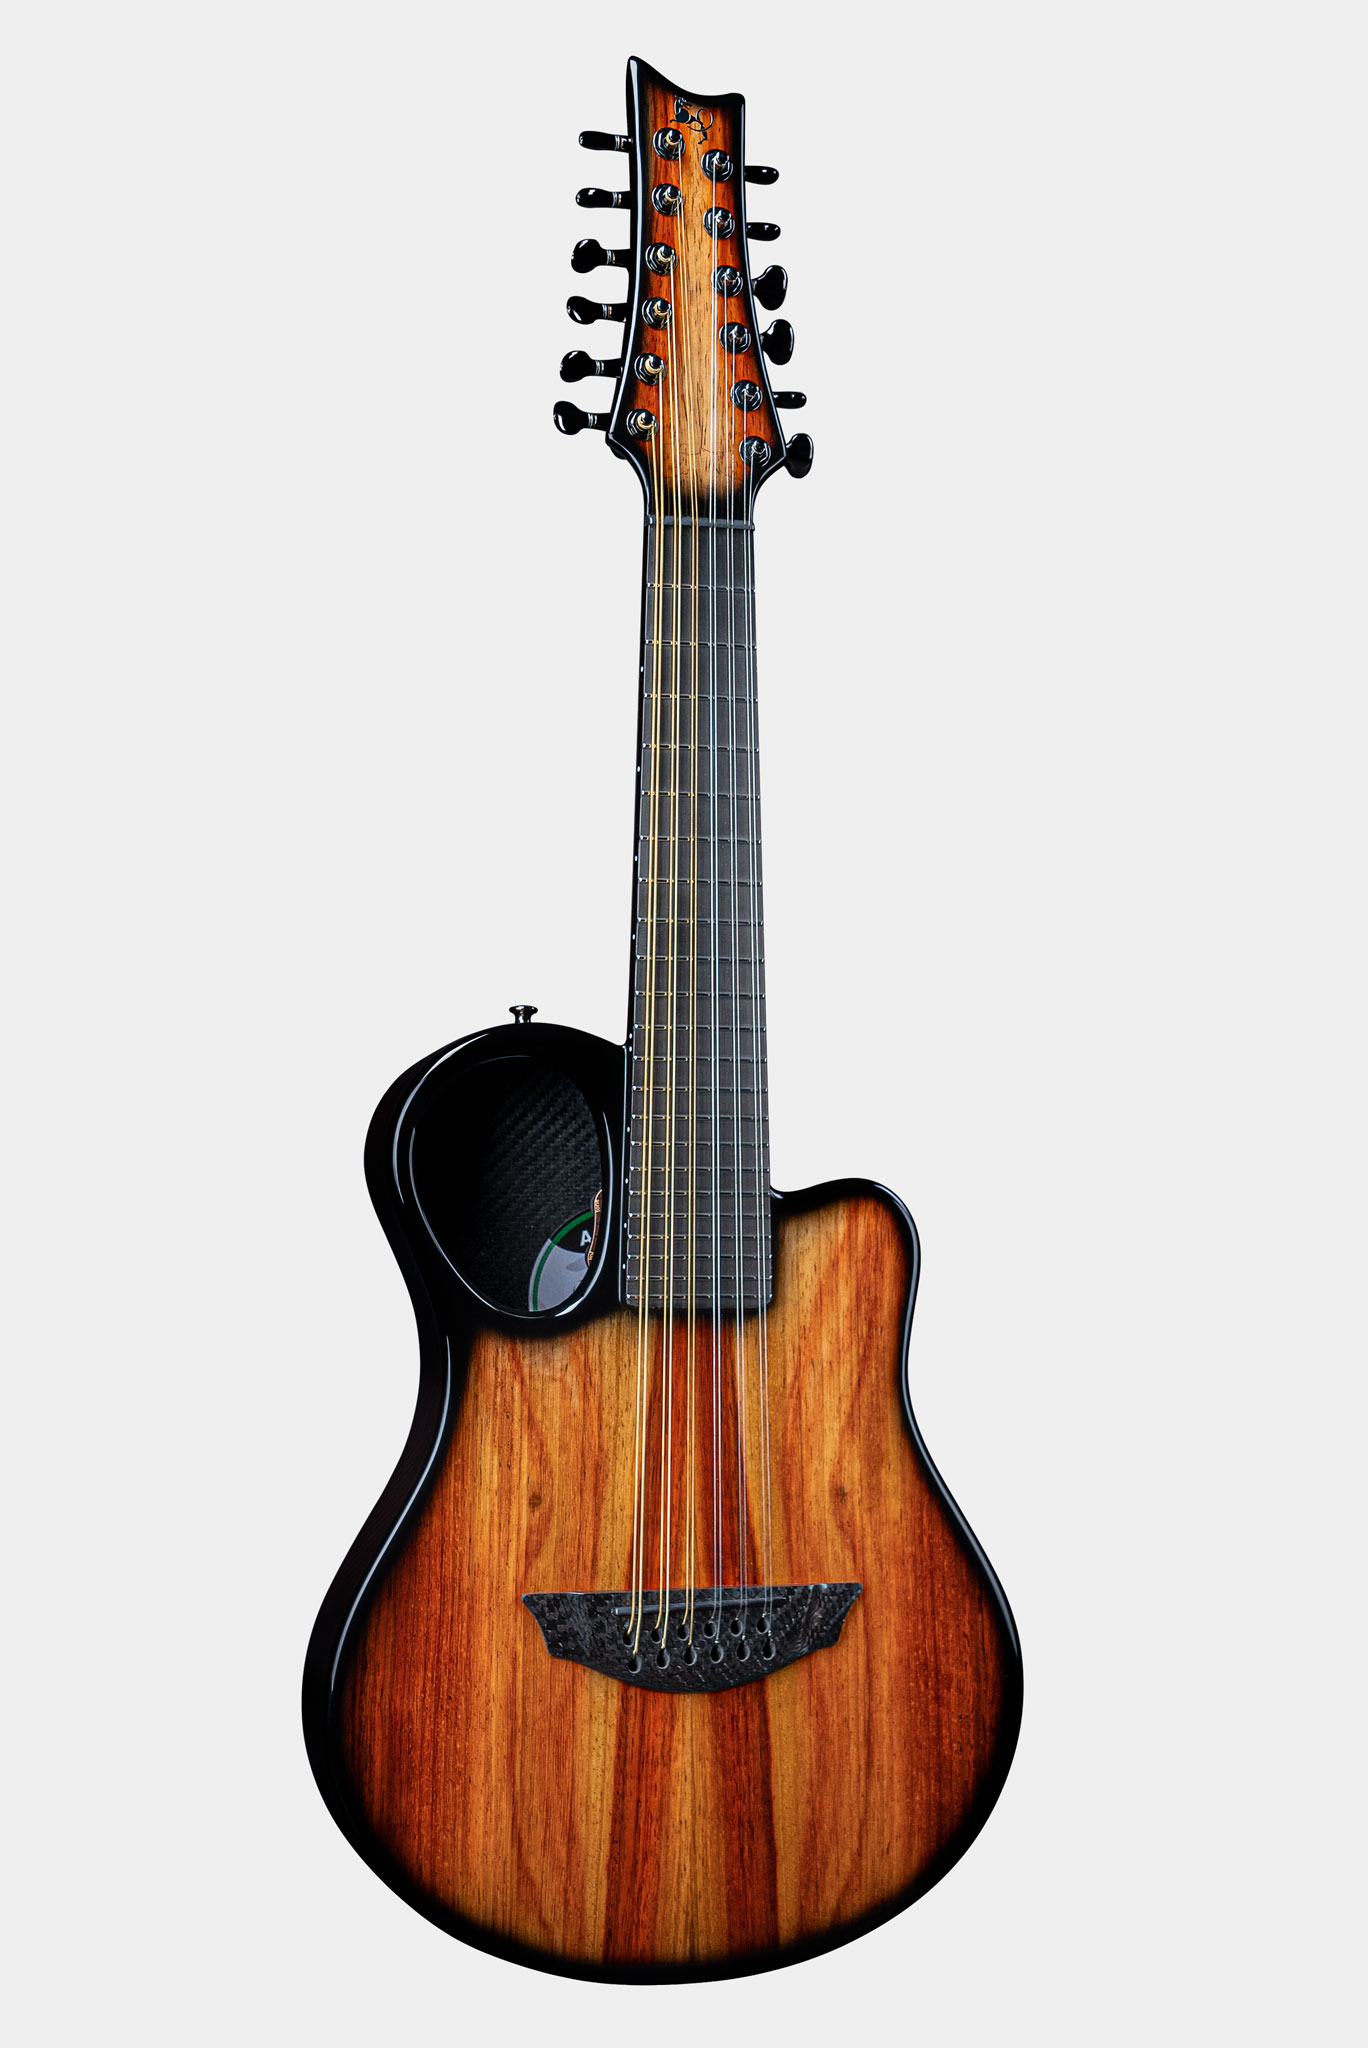 Emerald Amicus Carbon Fiber Guitar in Padauk